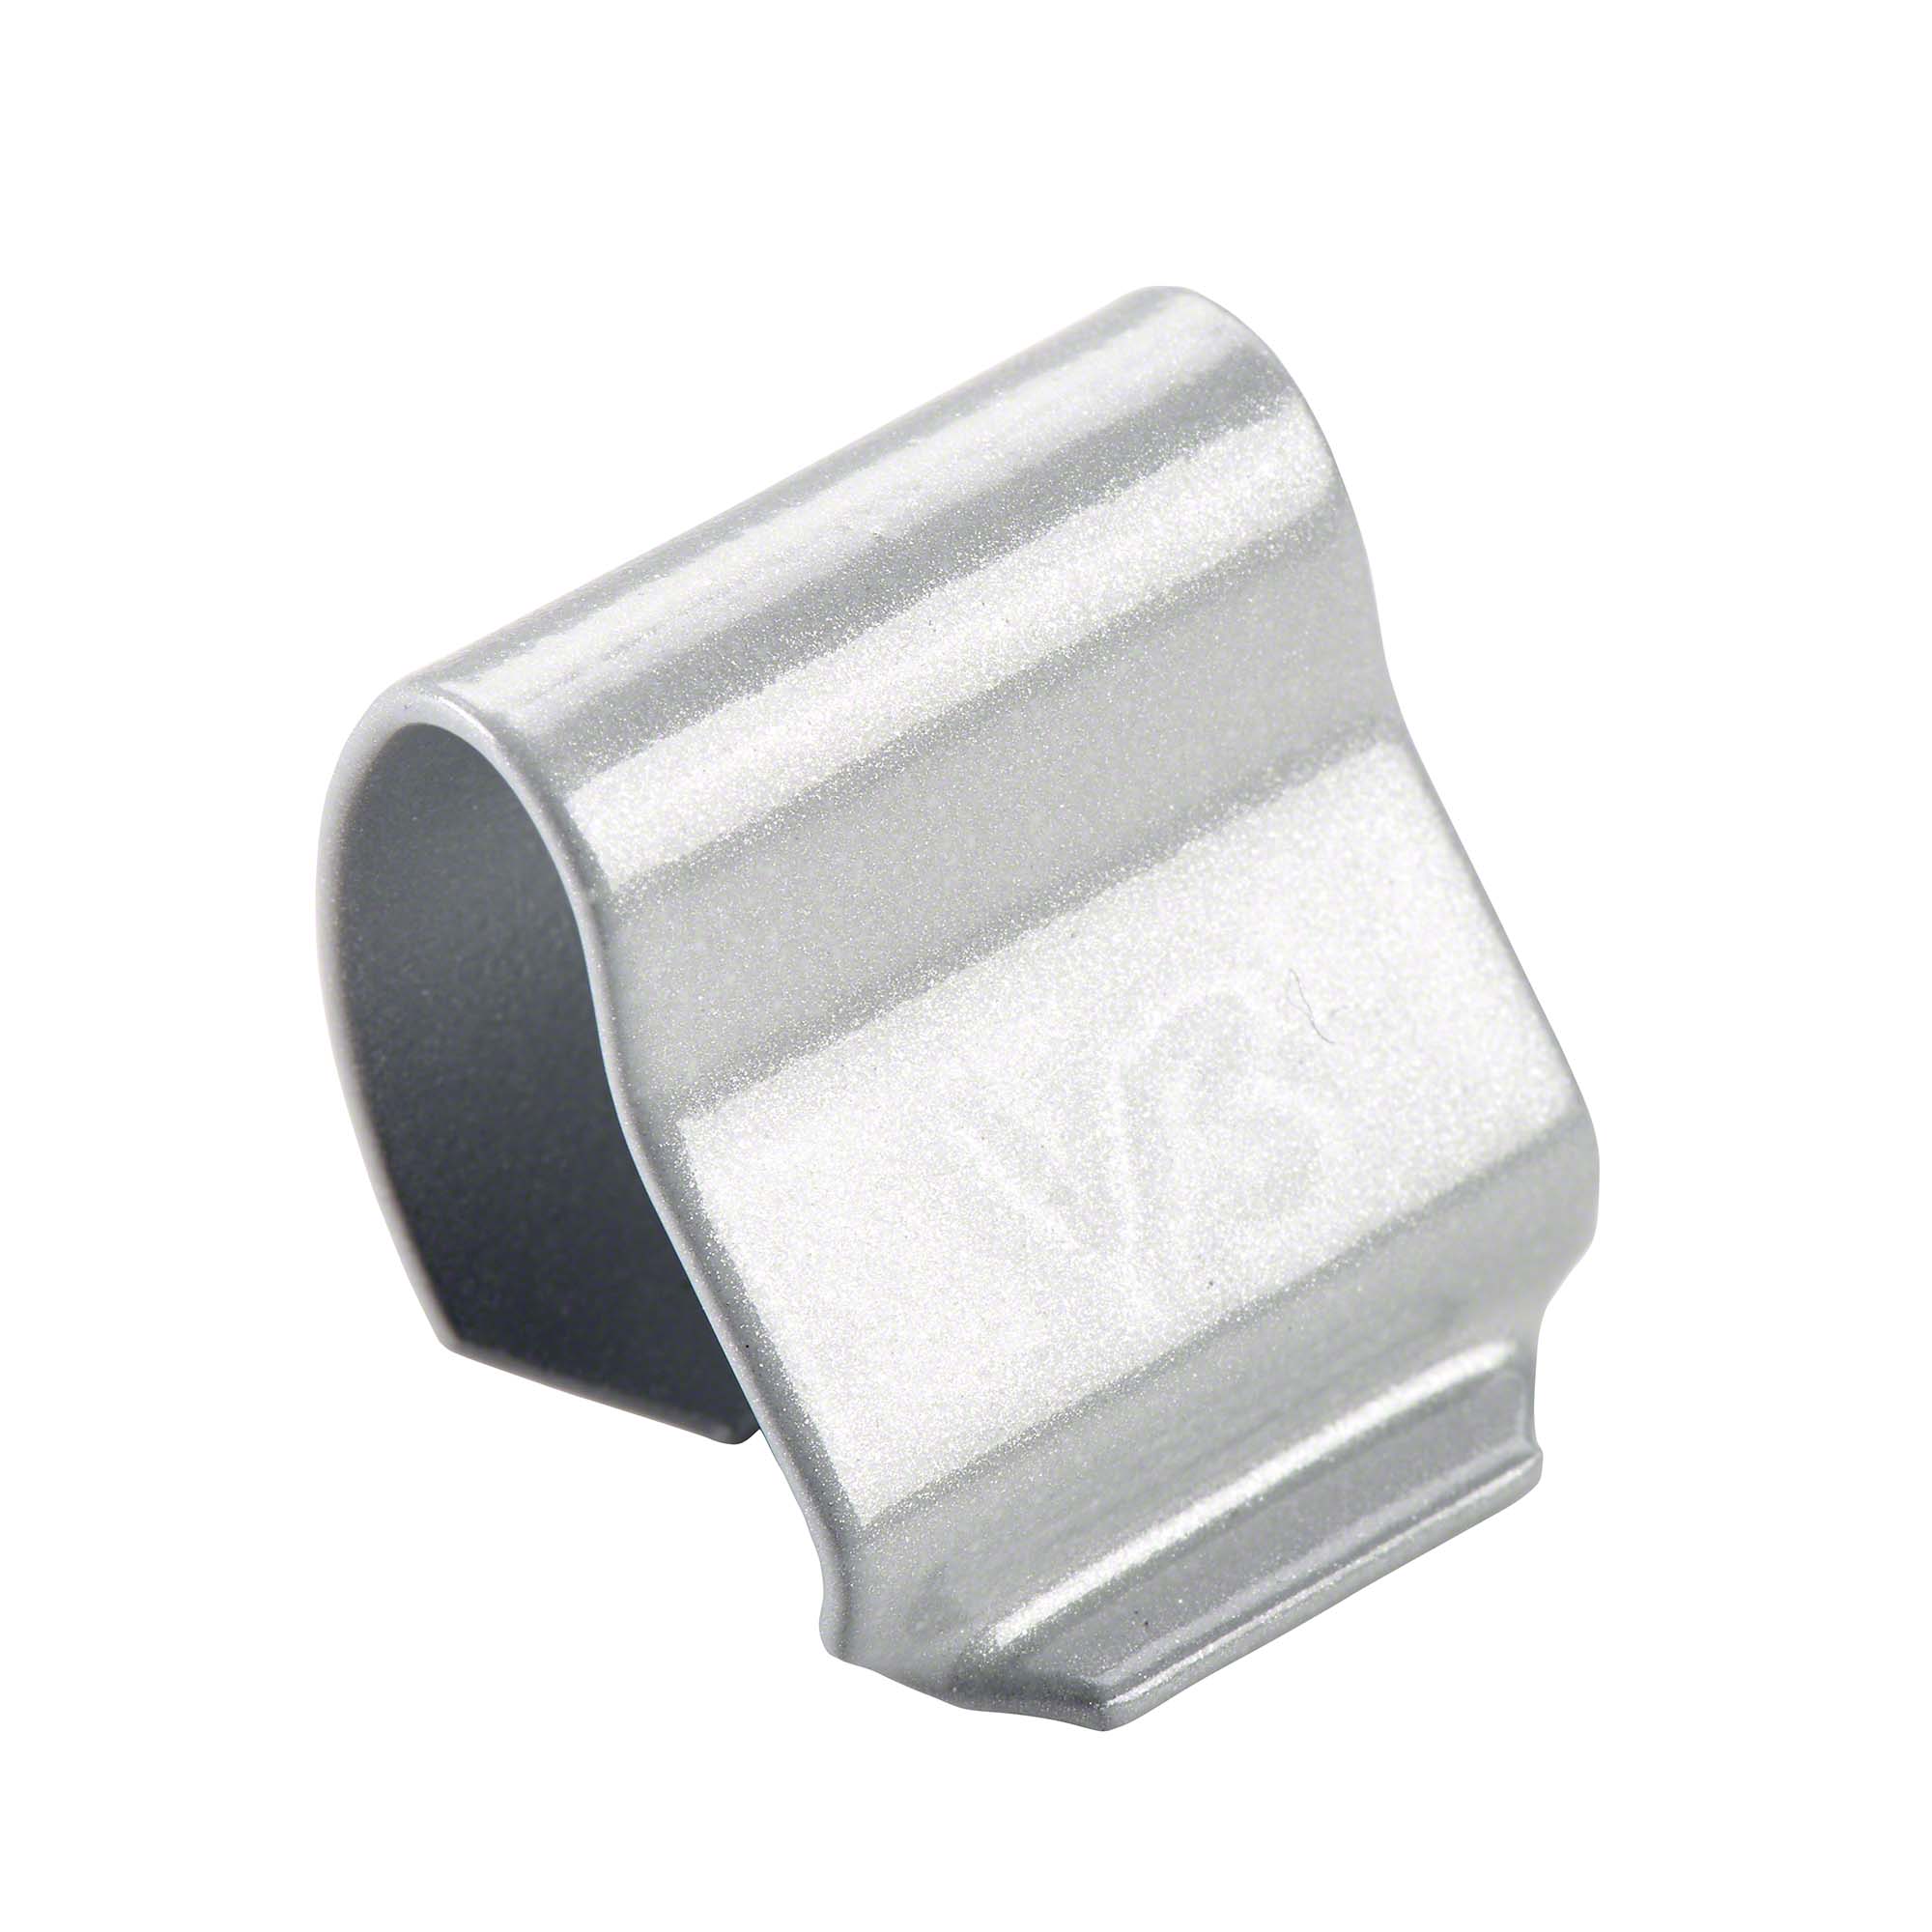 Molla per peso di sicurezza - V3-Zn (per tipo 260), acciaio, argento